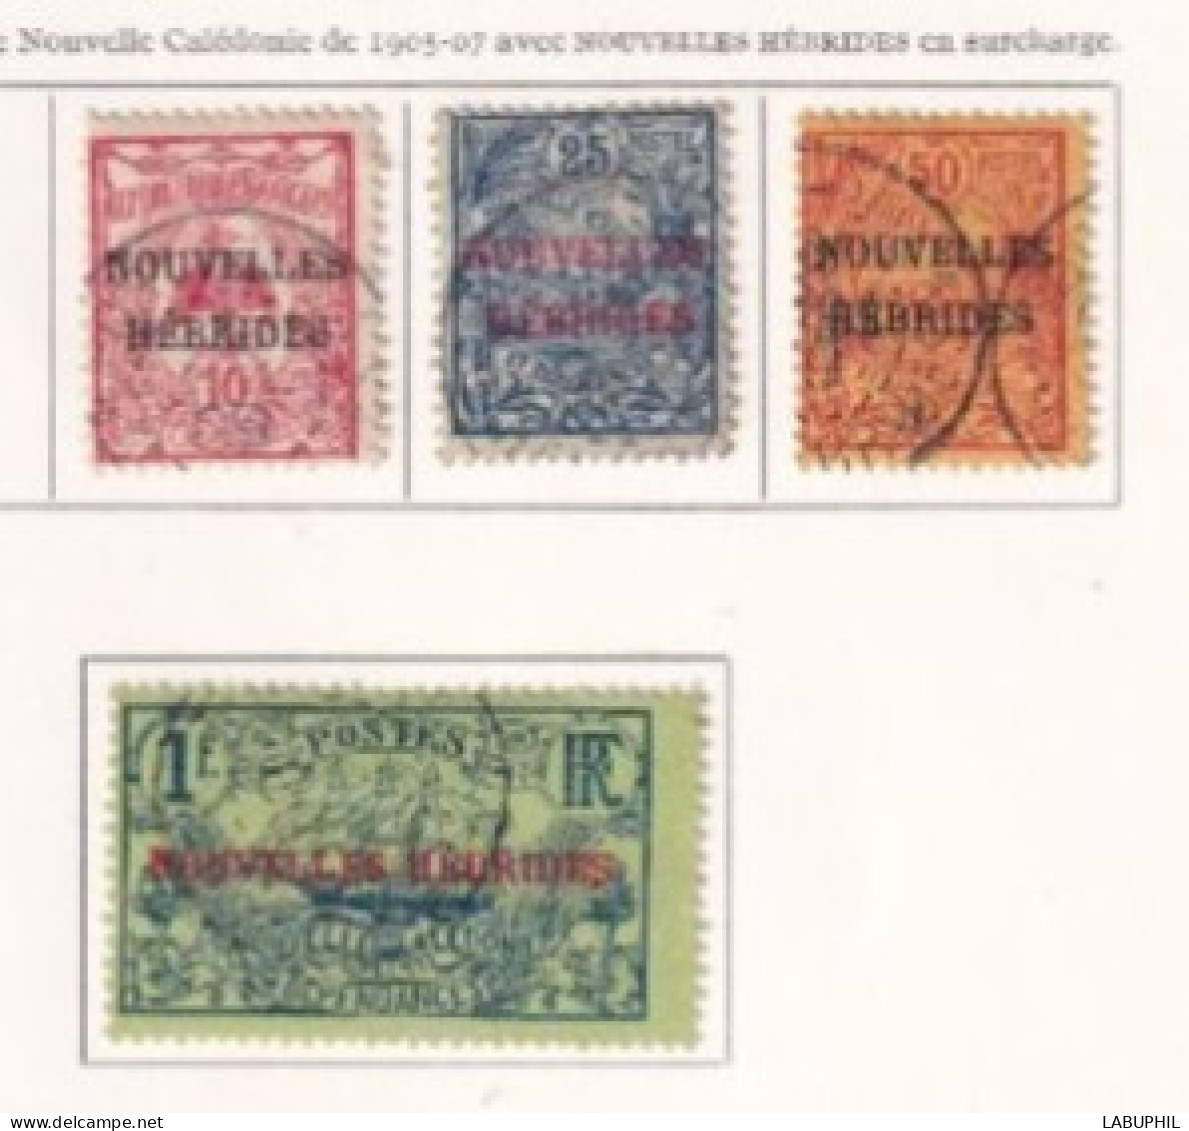 NOUVELLES HEBRIDES Dispersion D'une Collection Oblitéré Et Mlh  1908 - Used Stamps